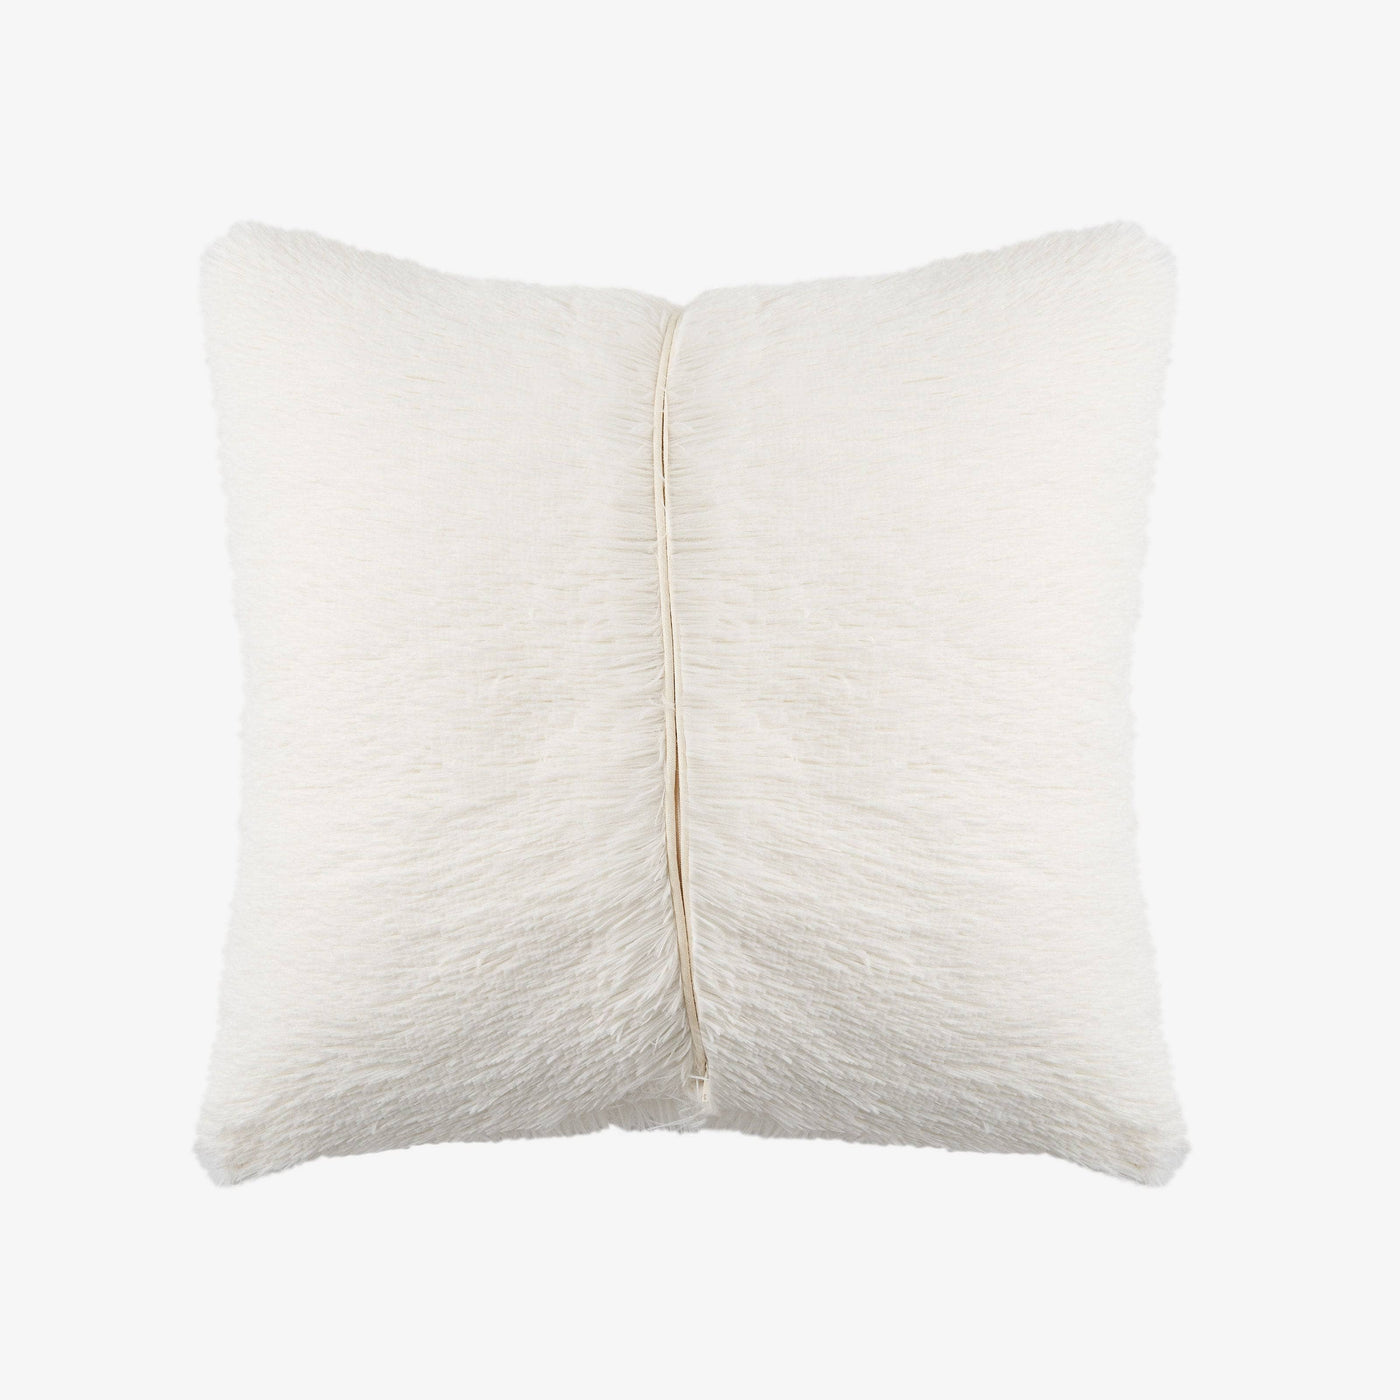 Cuddo Faux Fur Cushion Cover, Cream, 45x45 cm Cushion Covers sazy.com